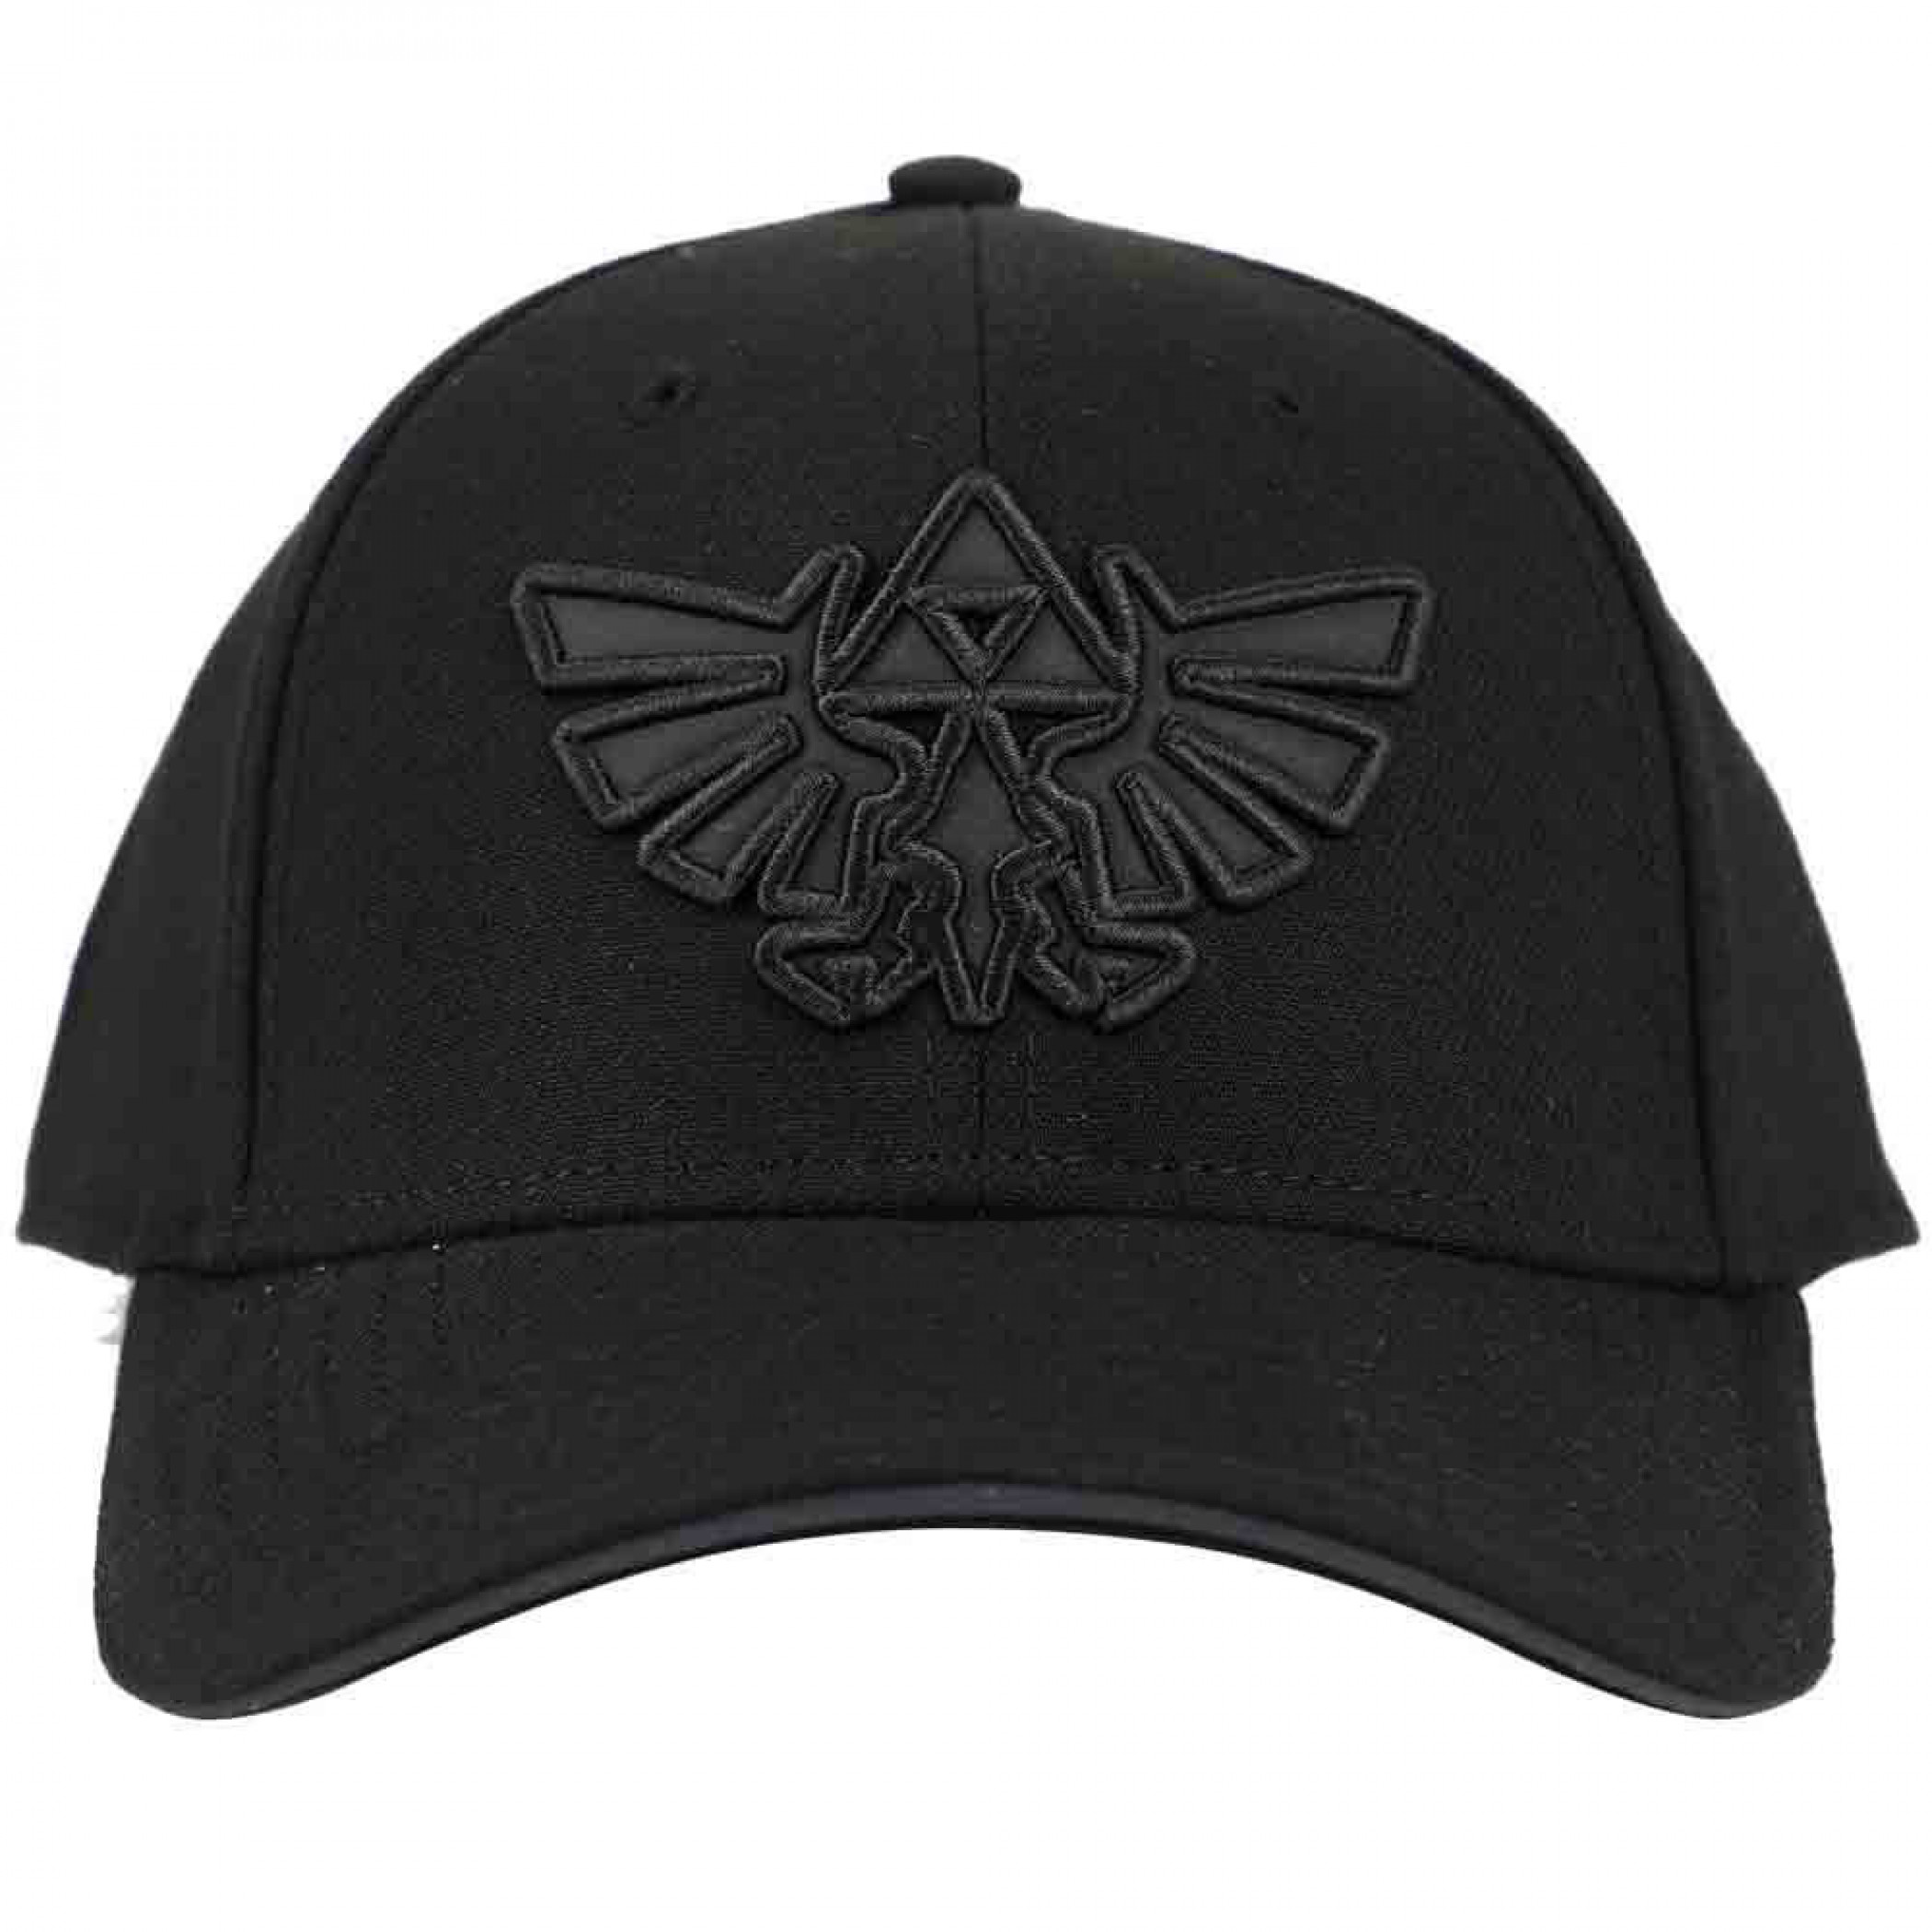 Legend of Zelda Triforce Embroidered Logo Curved Bill Snapback Hat